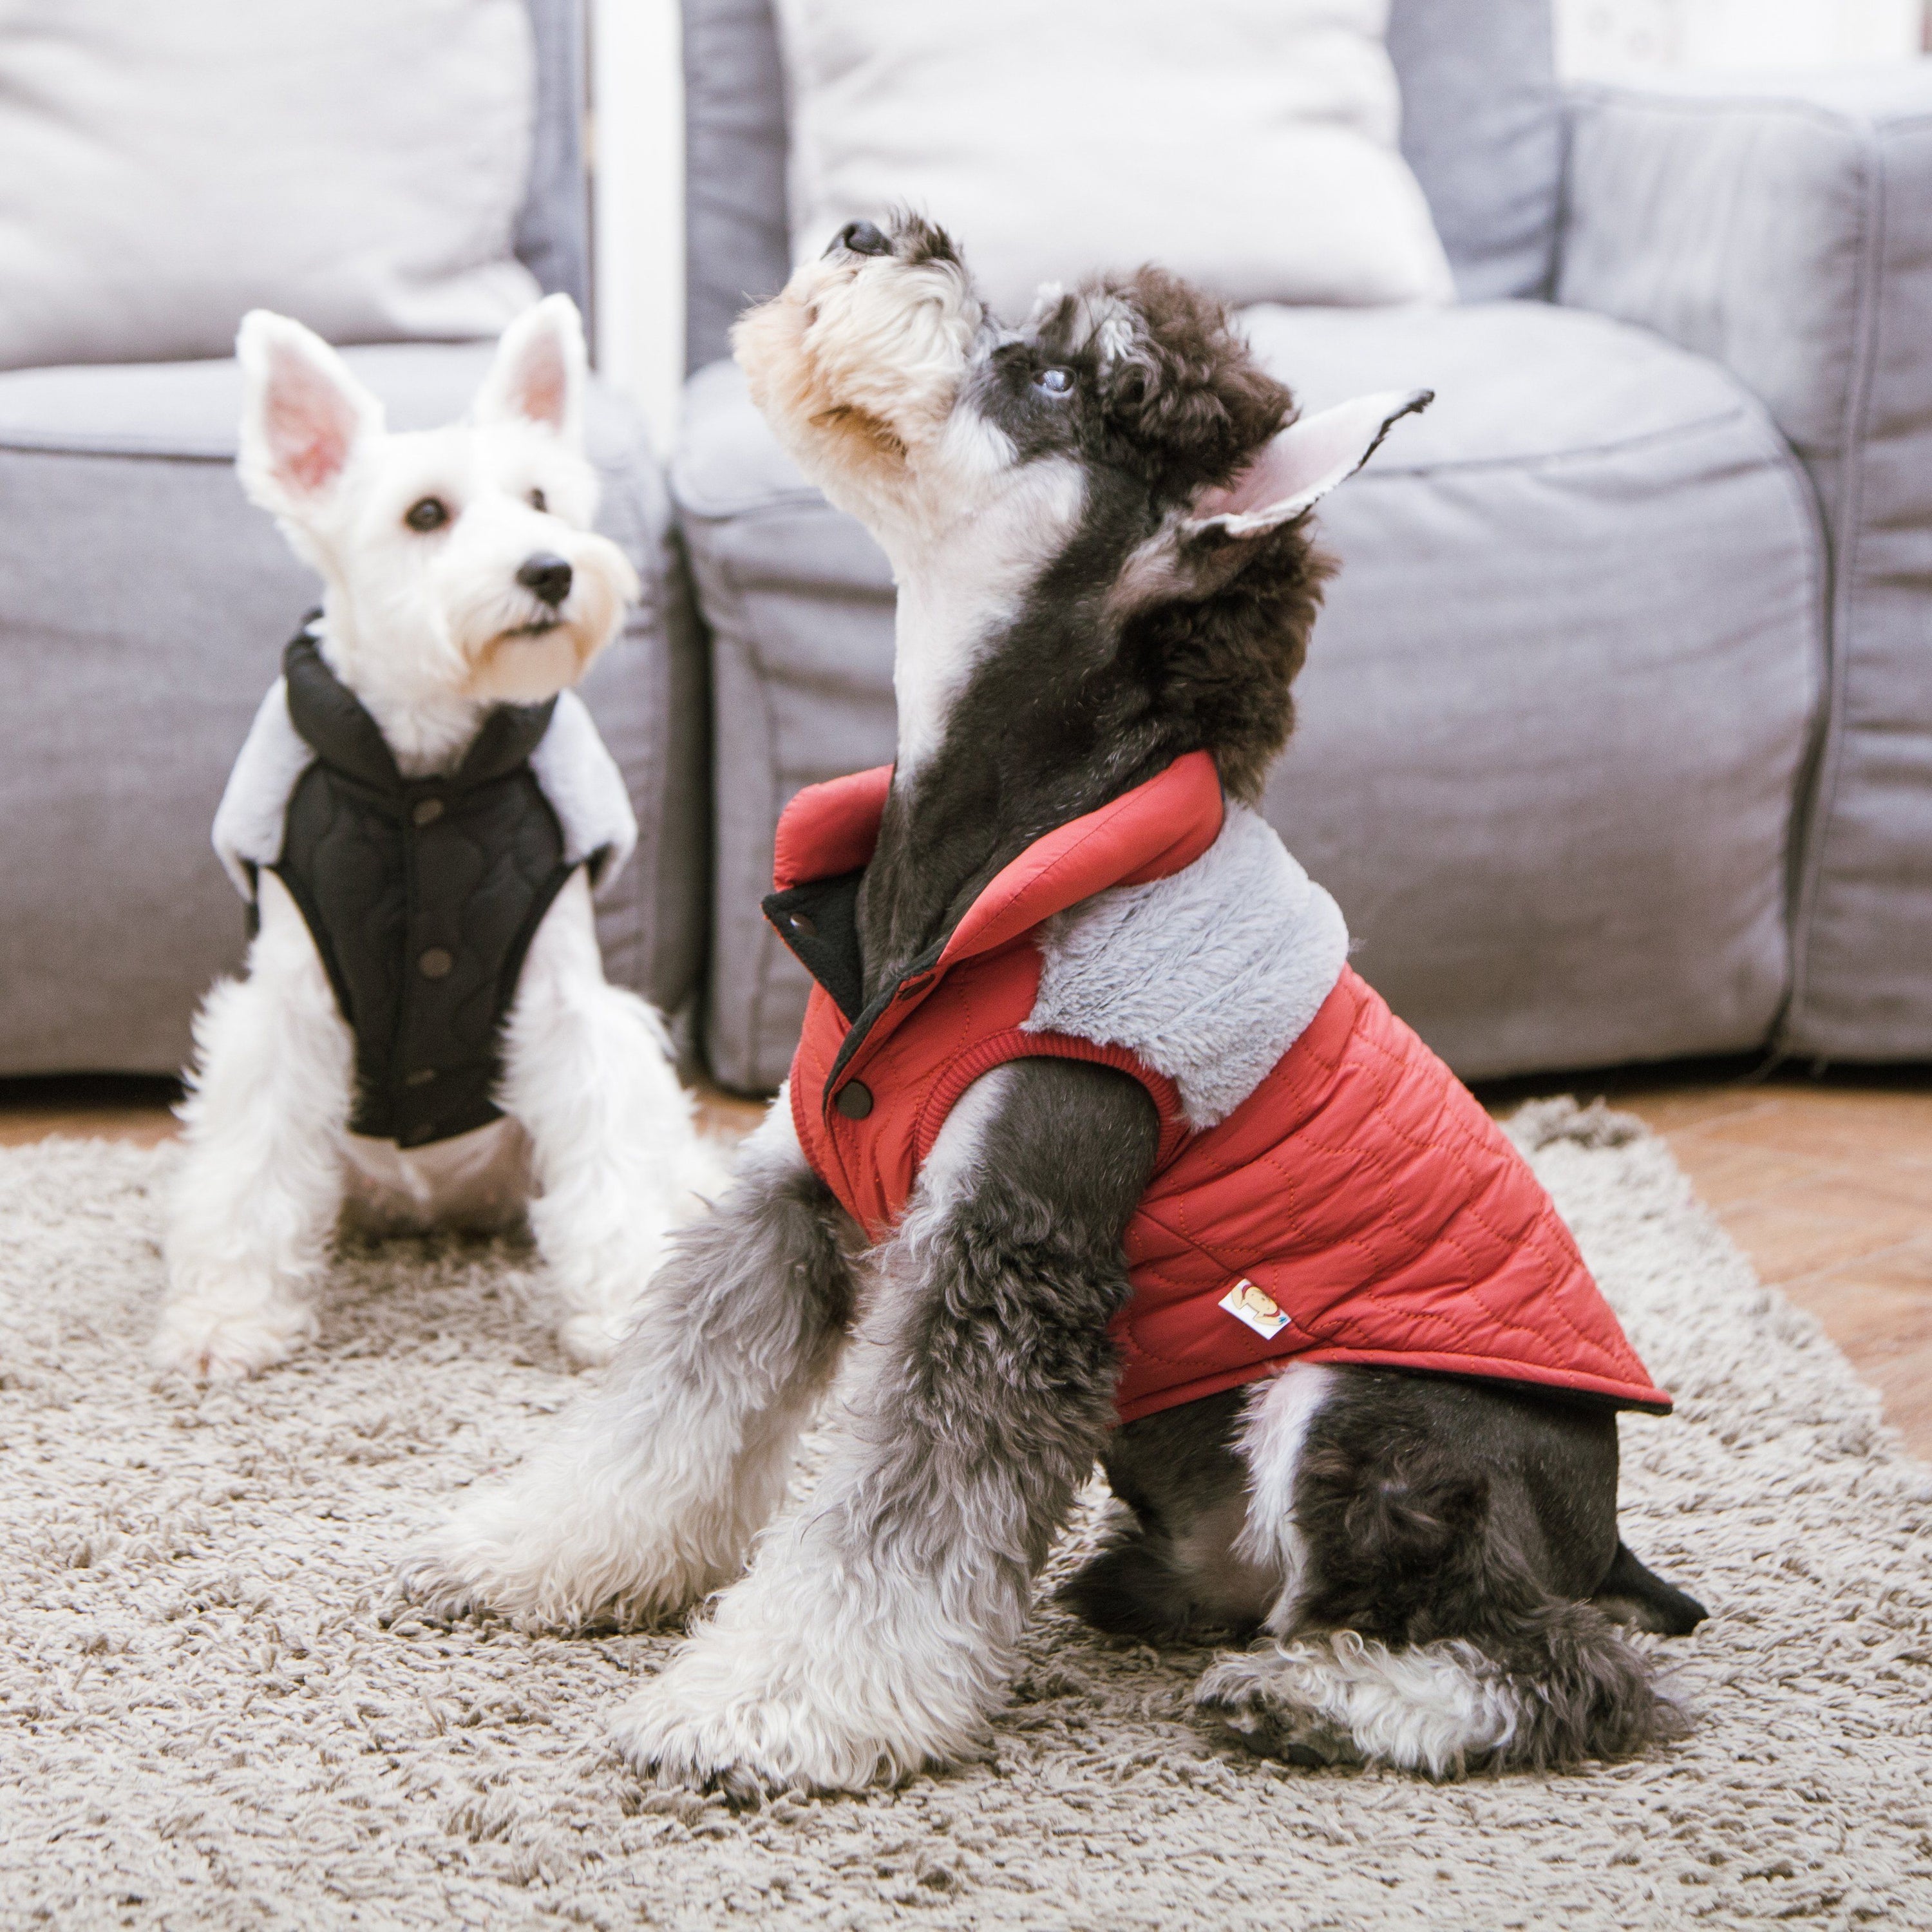 Touchdog 'Furrost-Bite' Fur and Fleece Designer Fashion Dog Jacket  